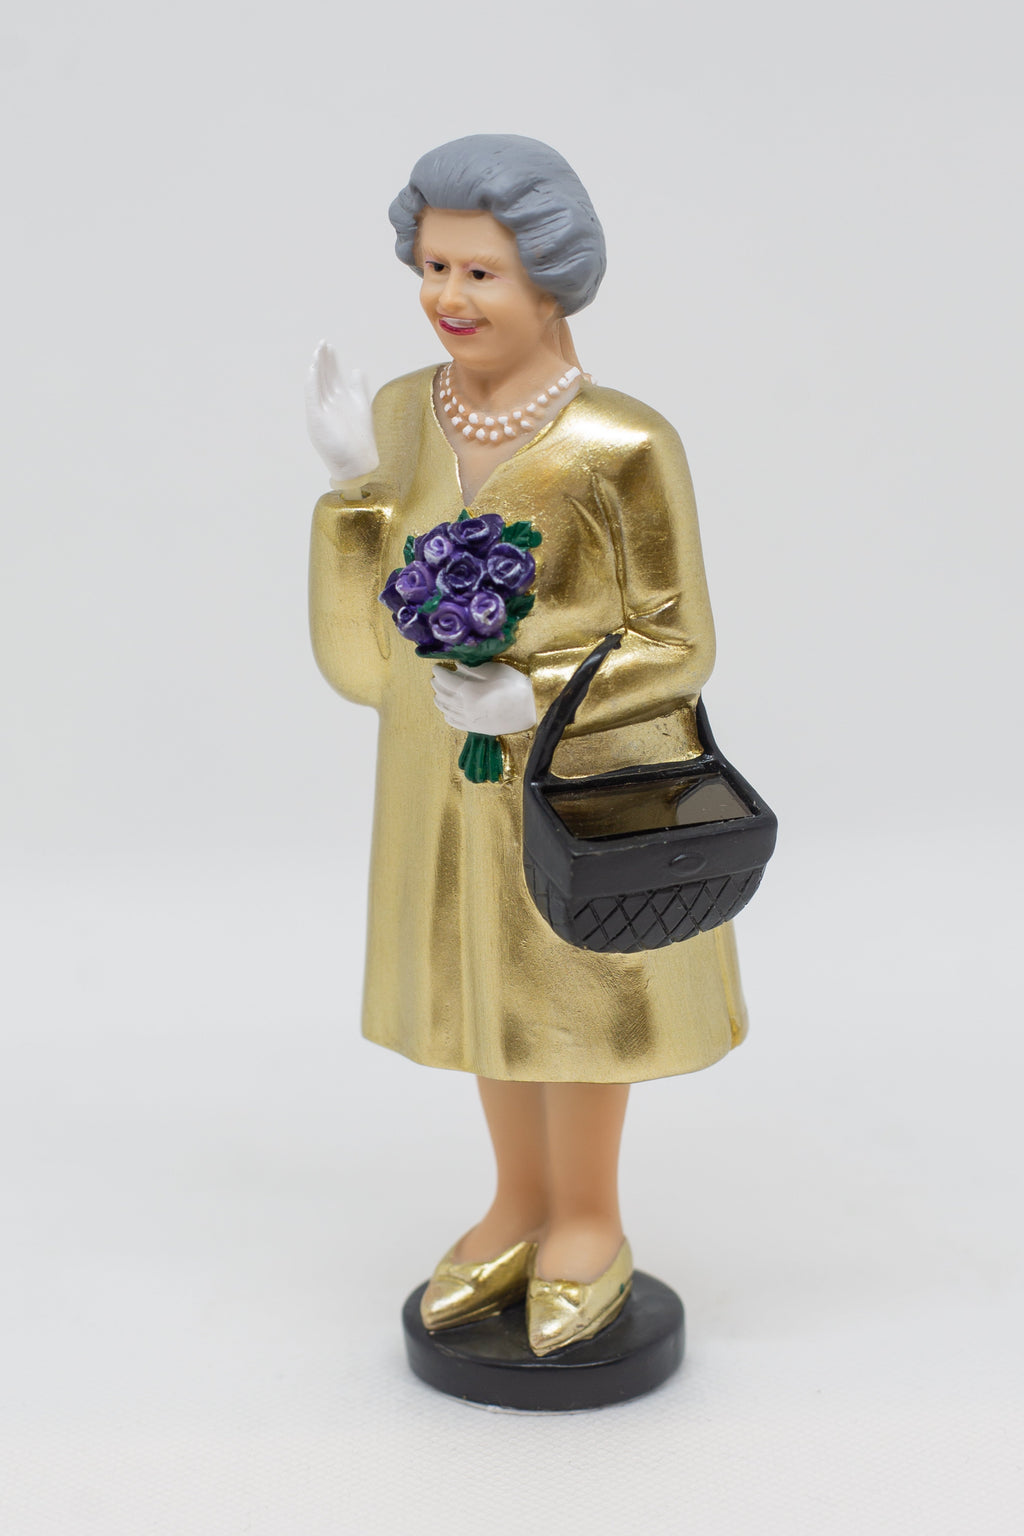 Statuetta Queen Elizabeth gold edition con pannello solare Kikkerland Accessorio Kikkerland